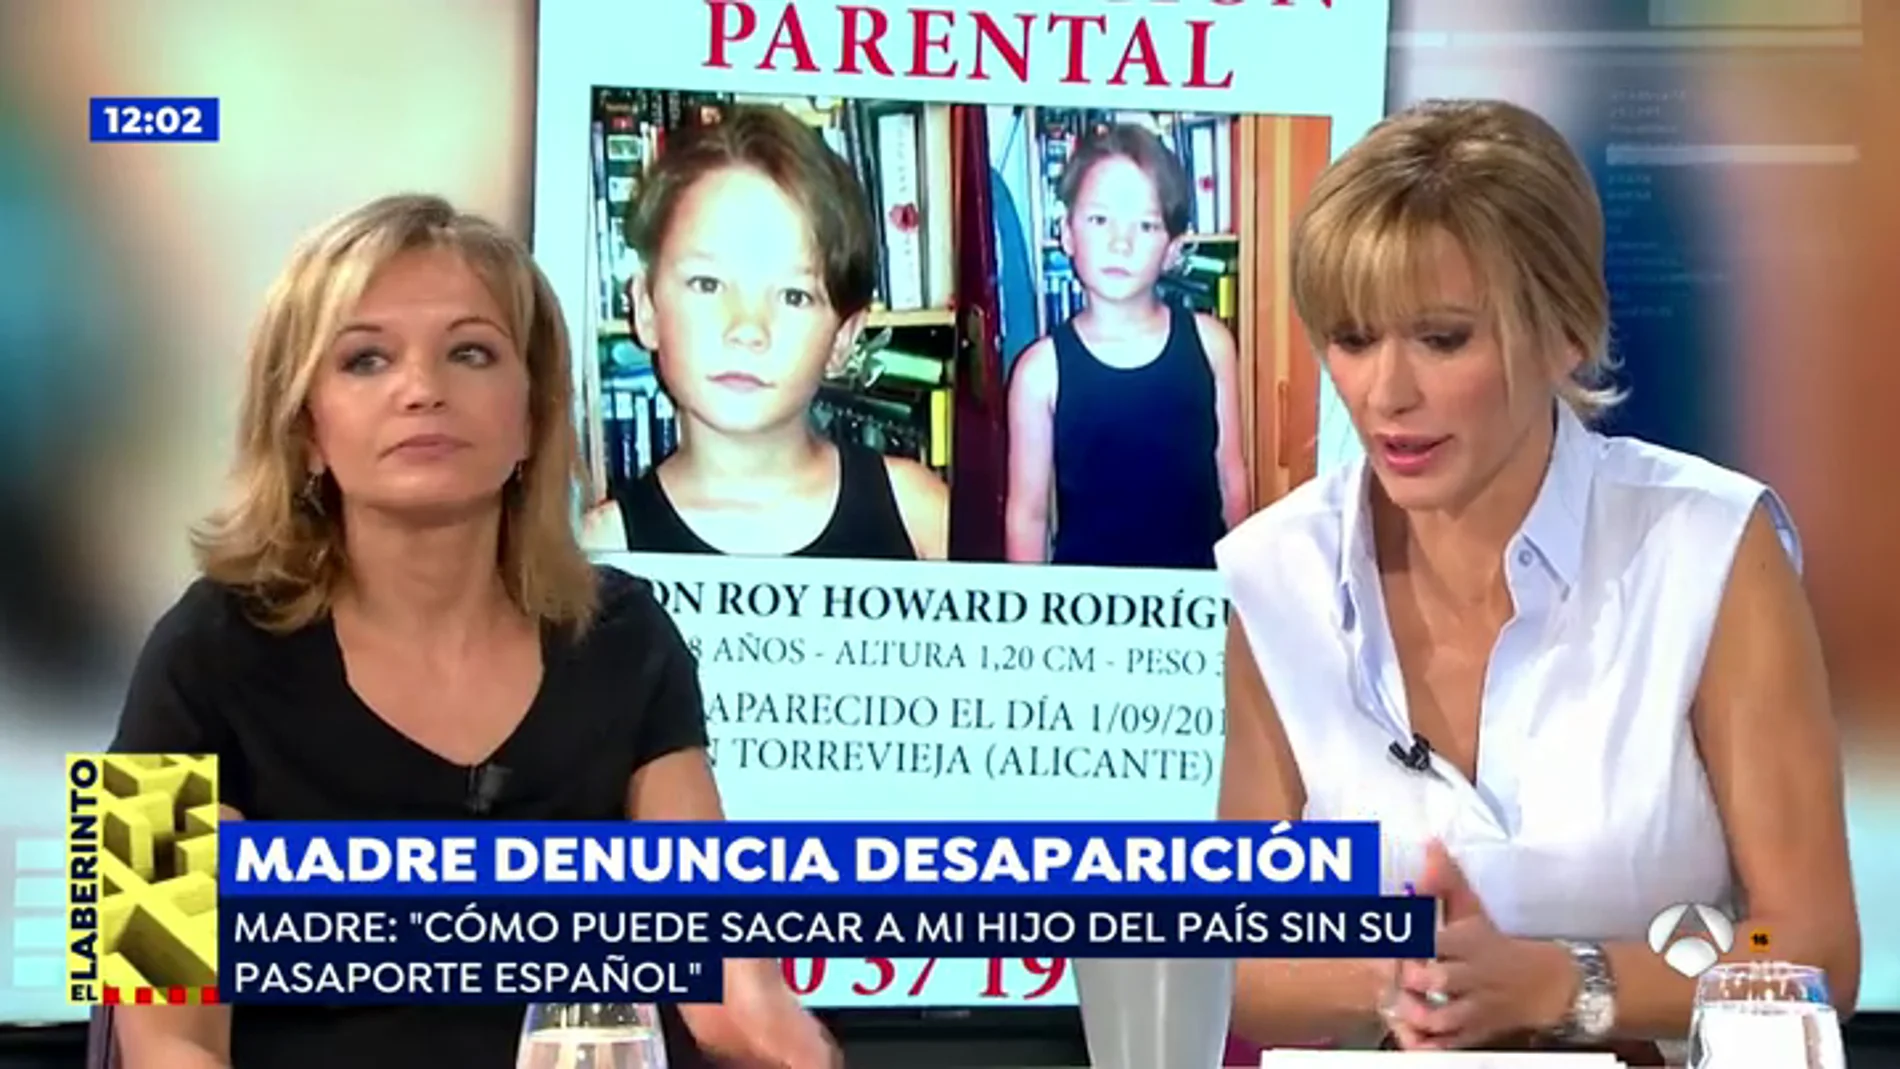 La desesperación de una madre a la que han secuestrado a su hijo: "No entiendo cómo mi marido lo ha sacado de España"